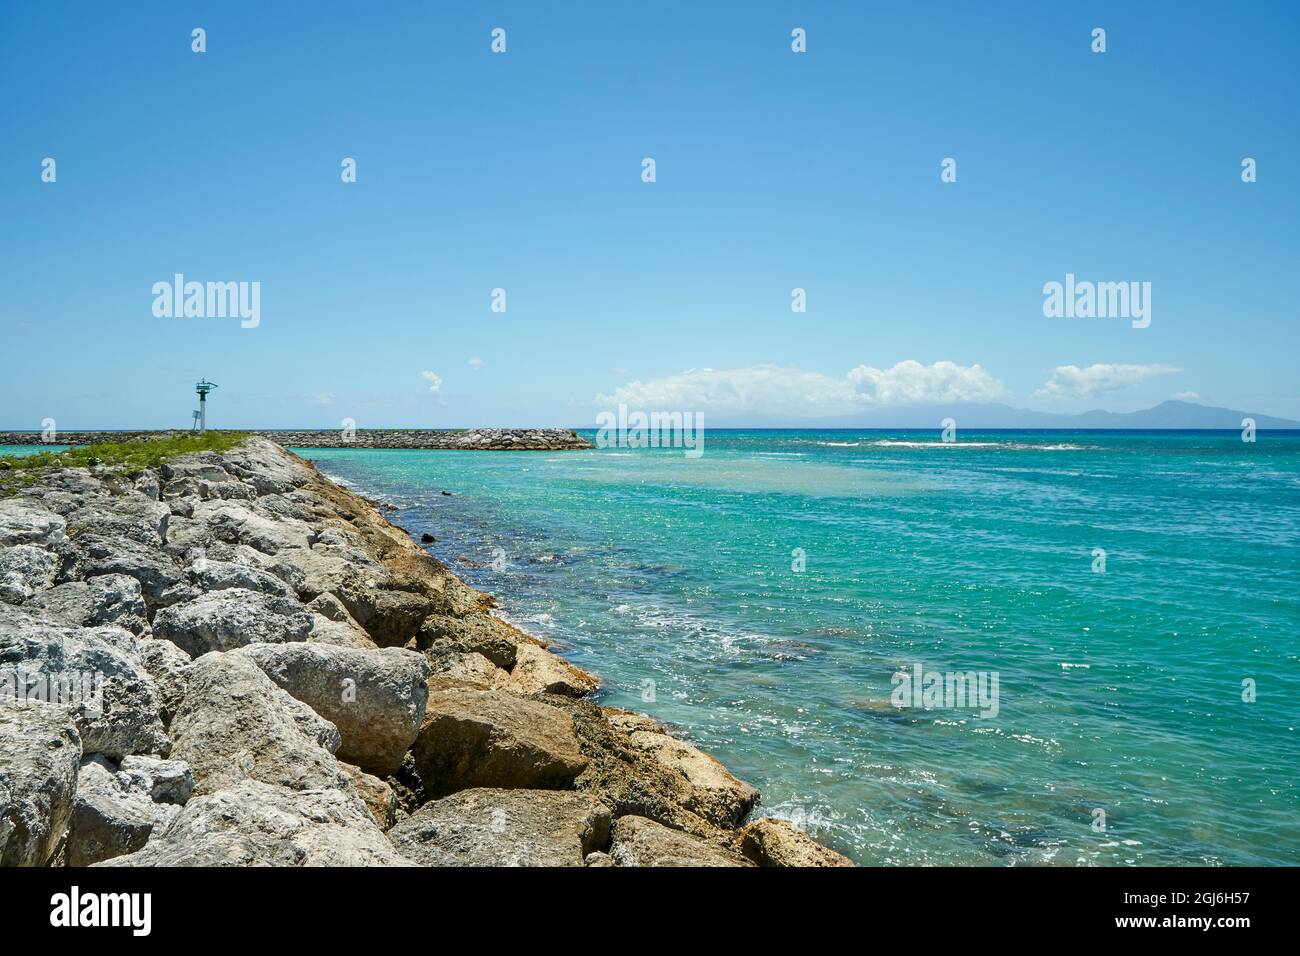 Caraibi, Antille francesi, Guadalupa. Isola Marie-Galante, parte della Francia. Guardando a sud-est lungo il molo presso il porto turistico della città (comune) Foto Stock